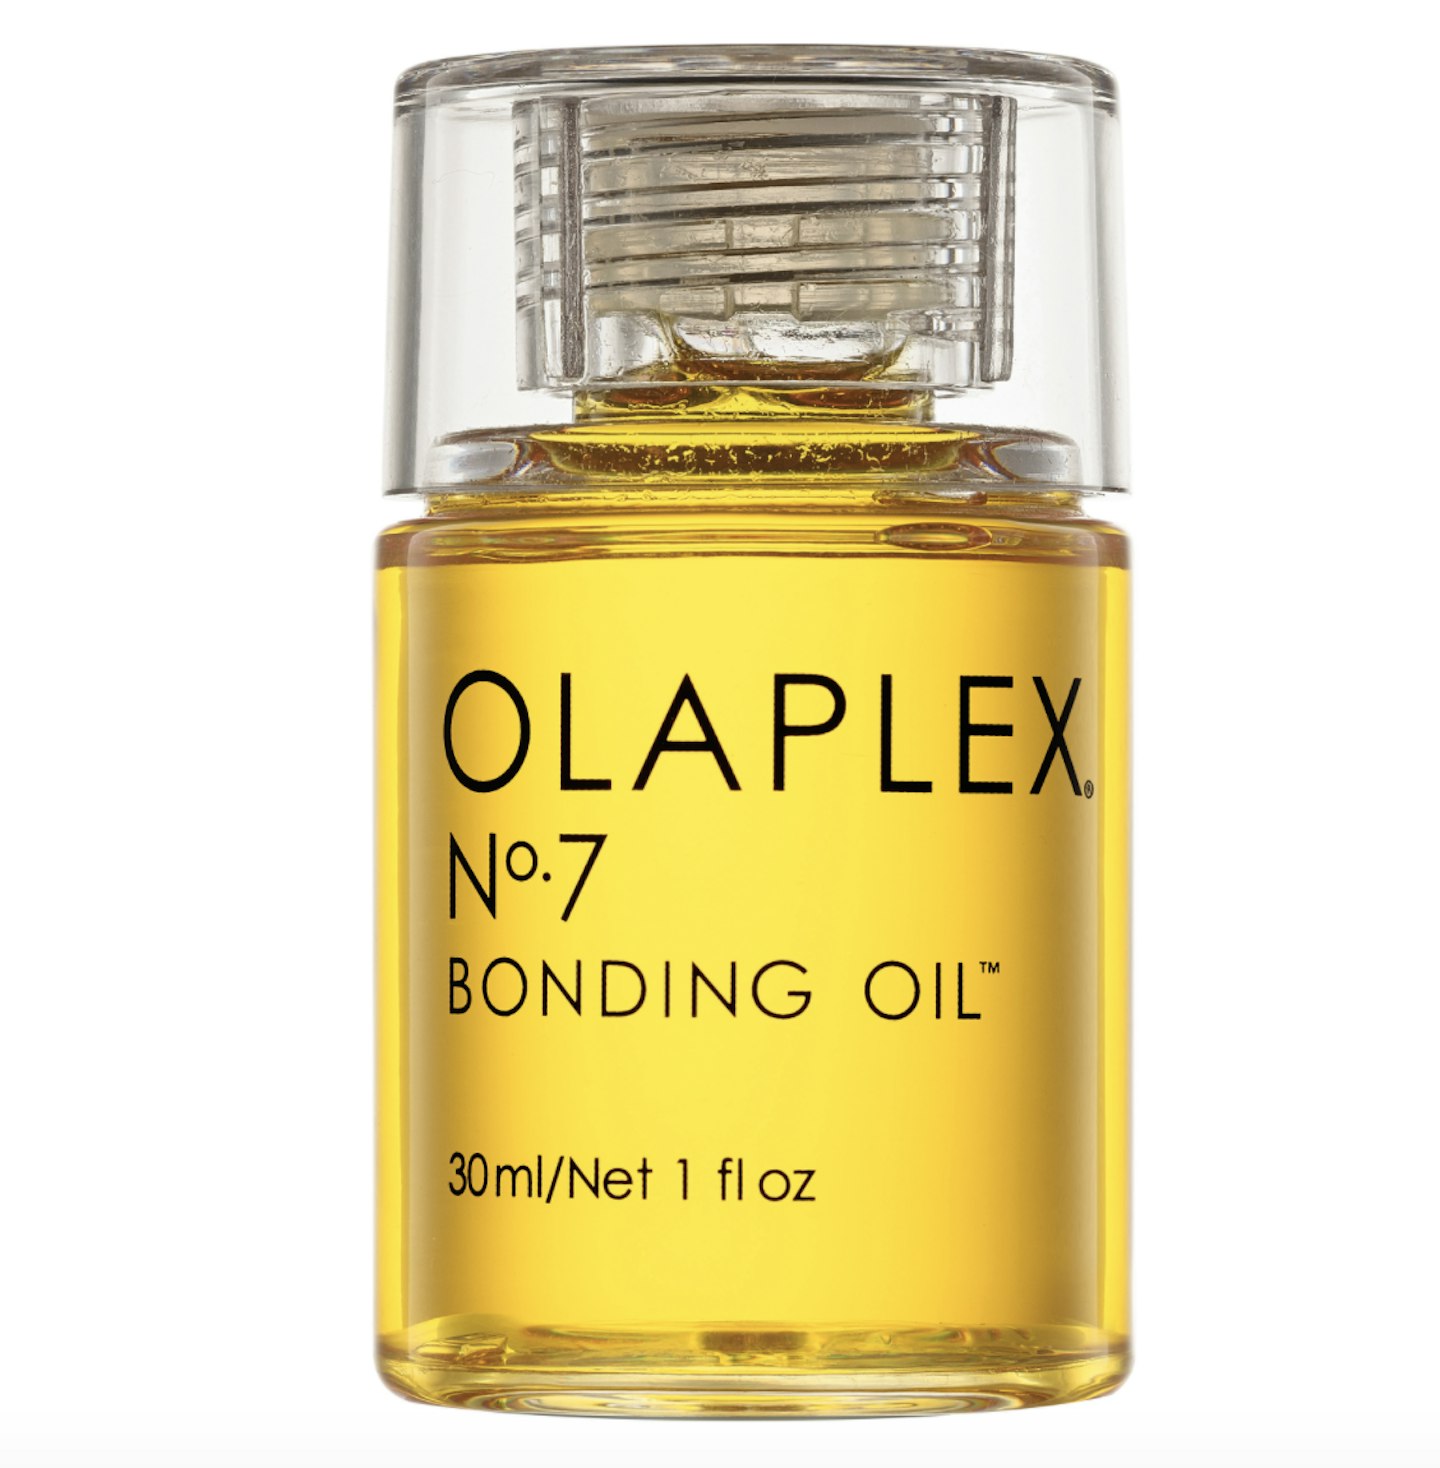 Best for damaged hair: Olaplex No.7 Bonding Oil, 30ml